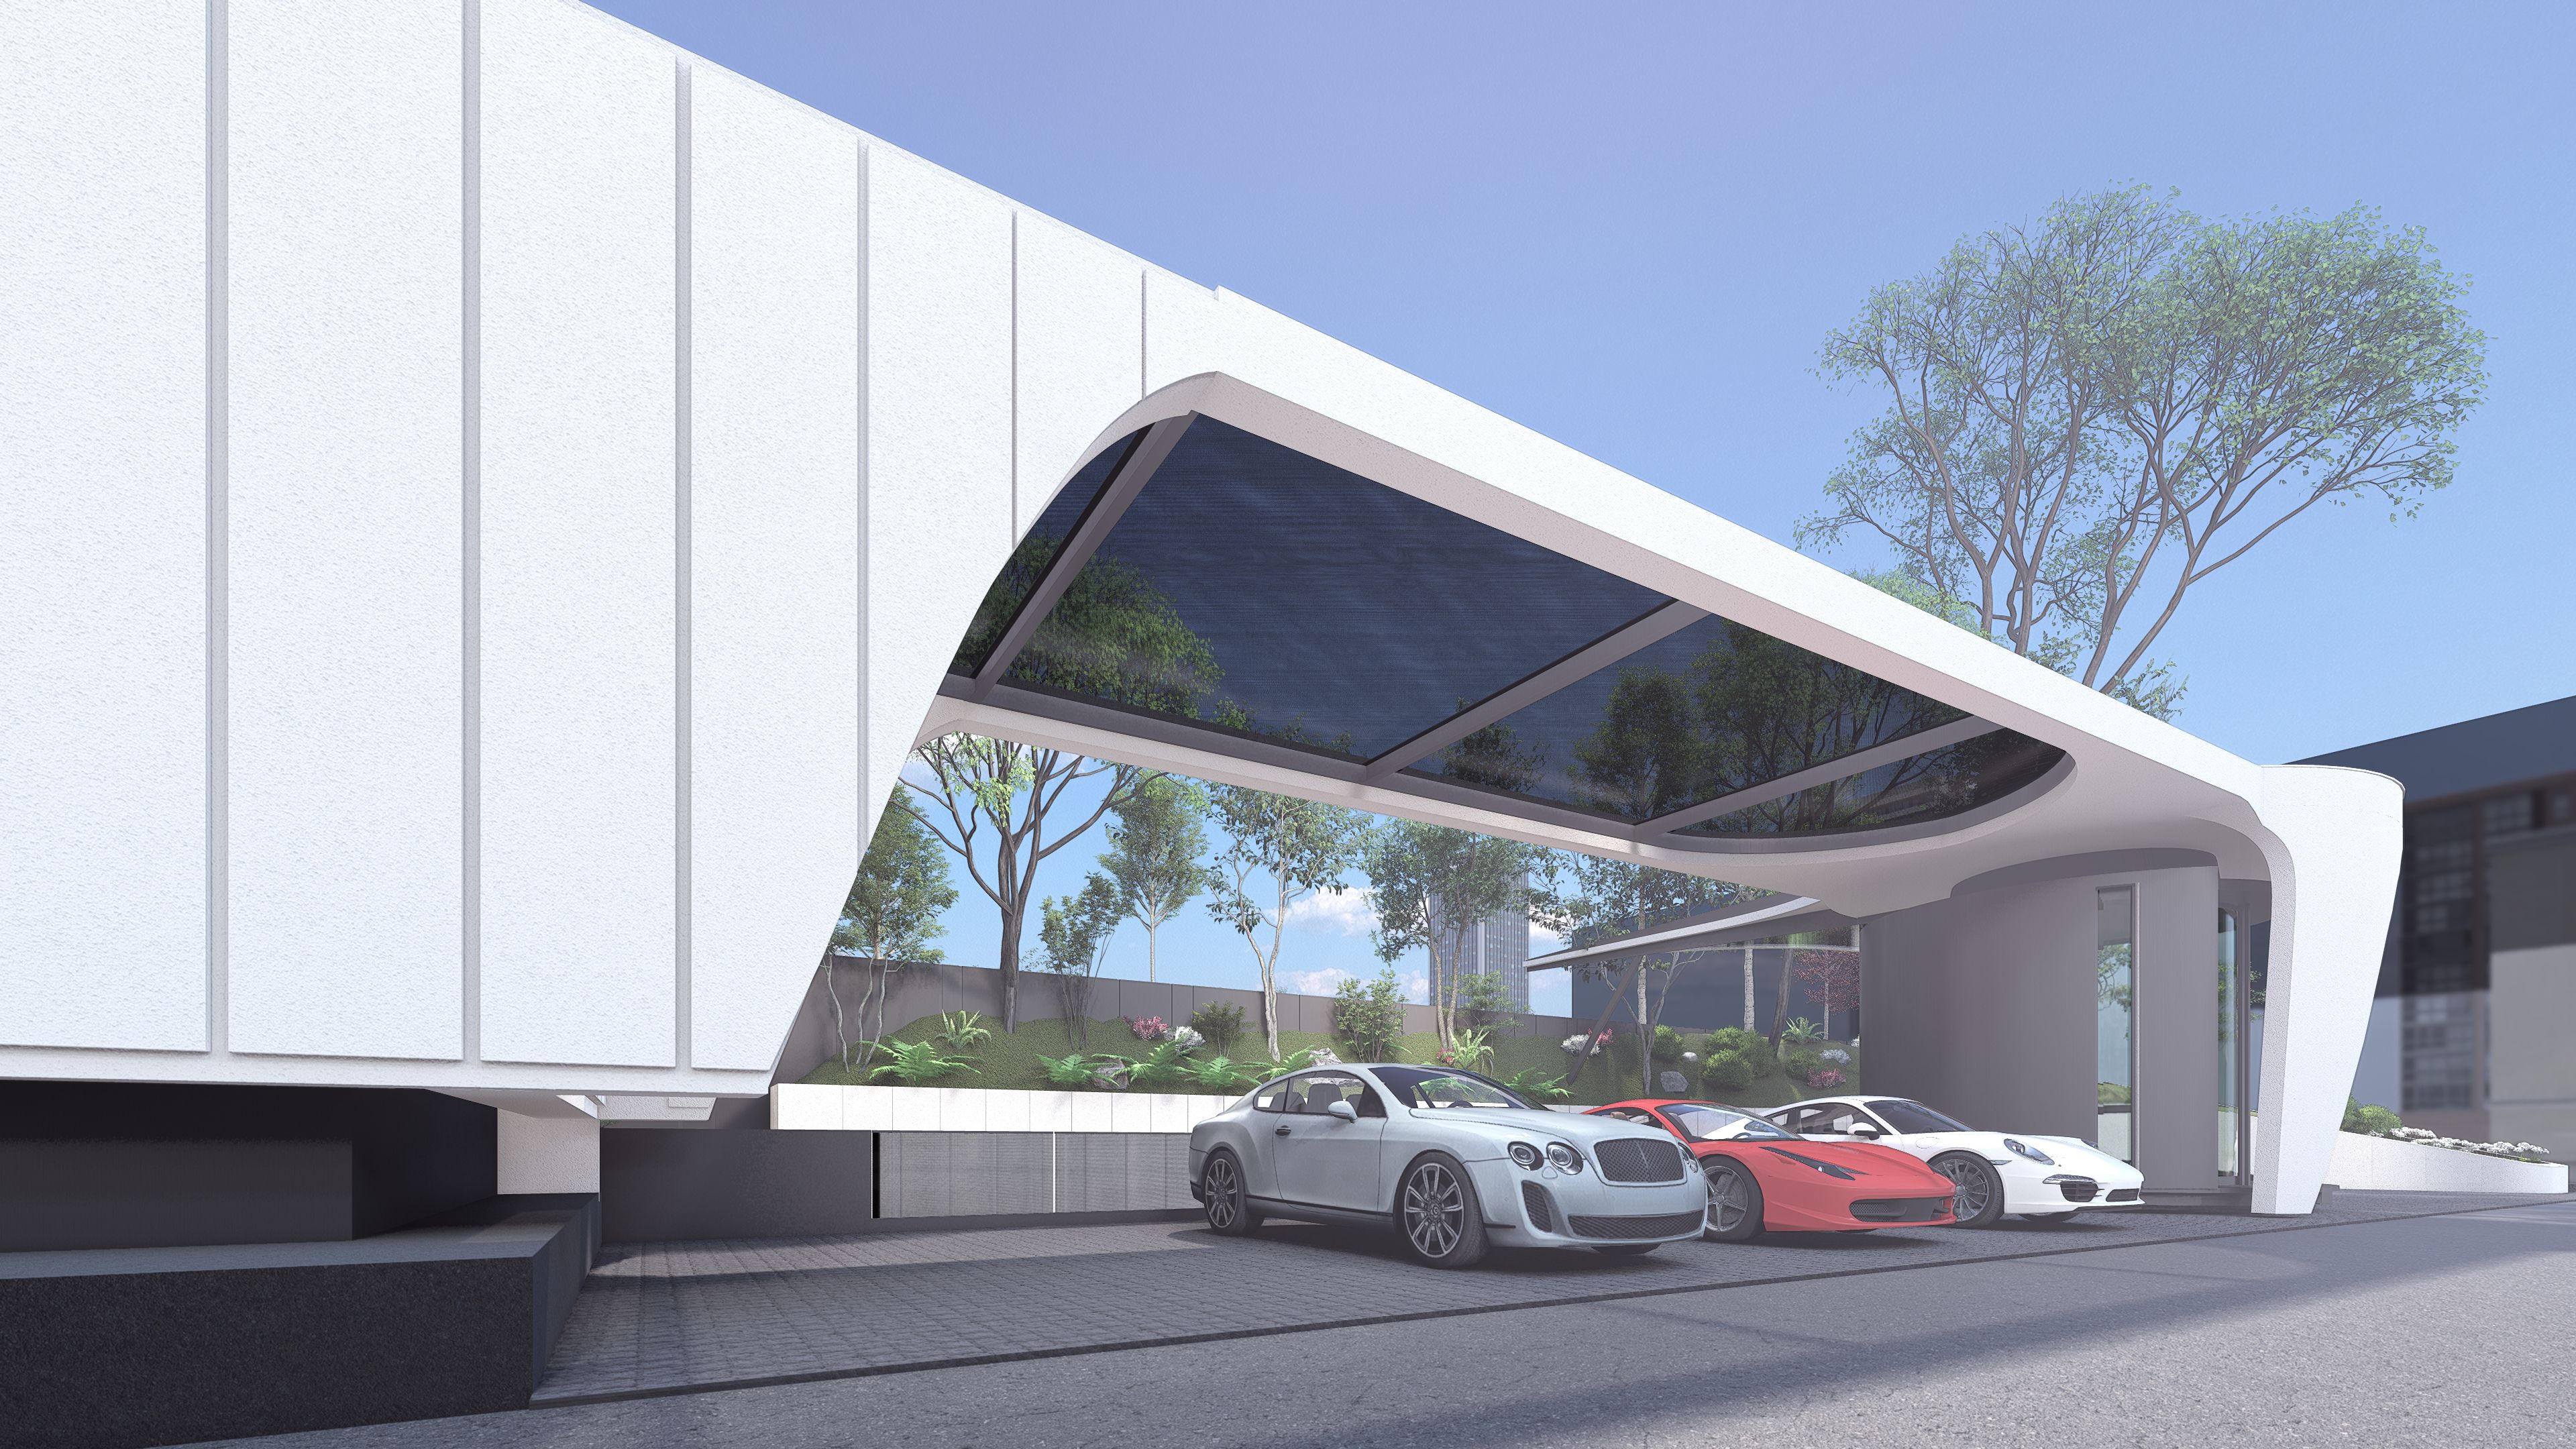 A rendering of a futuristic, open-air car garage.